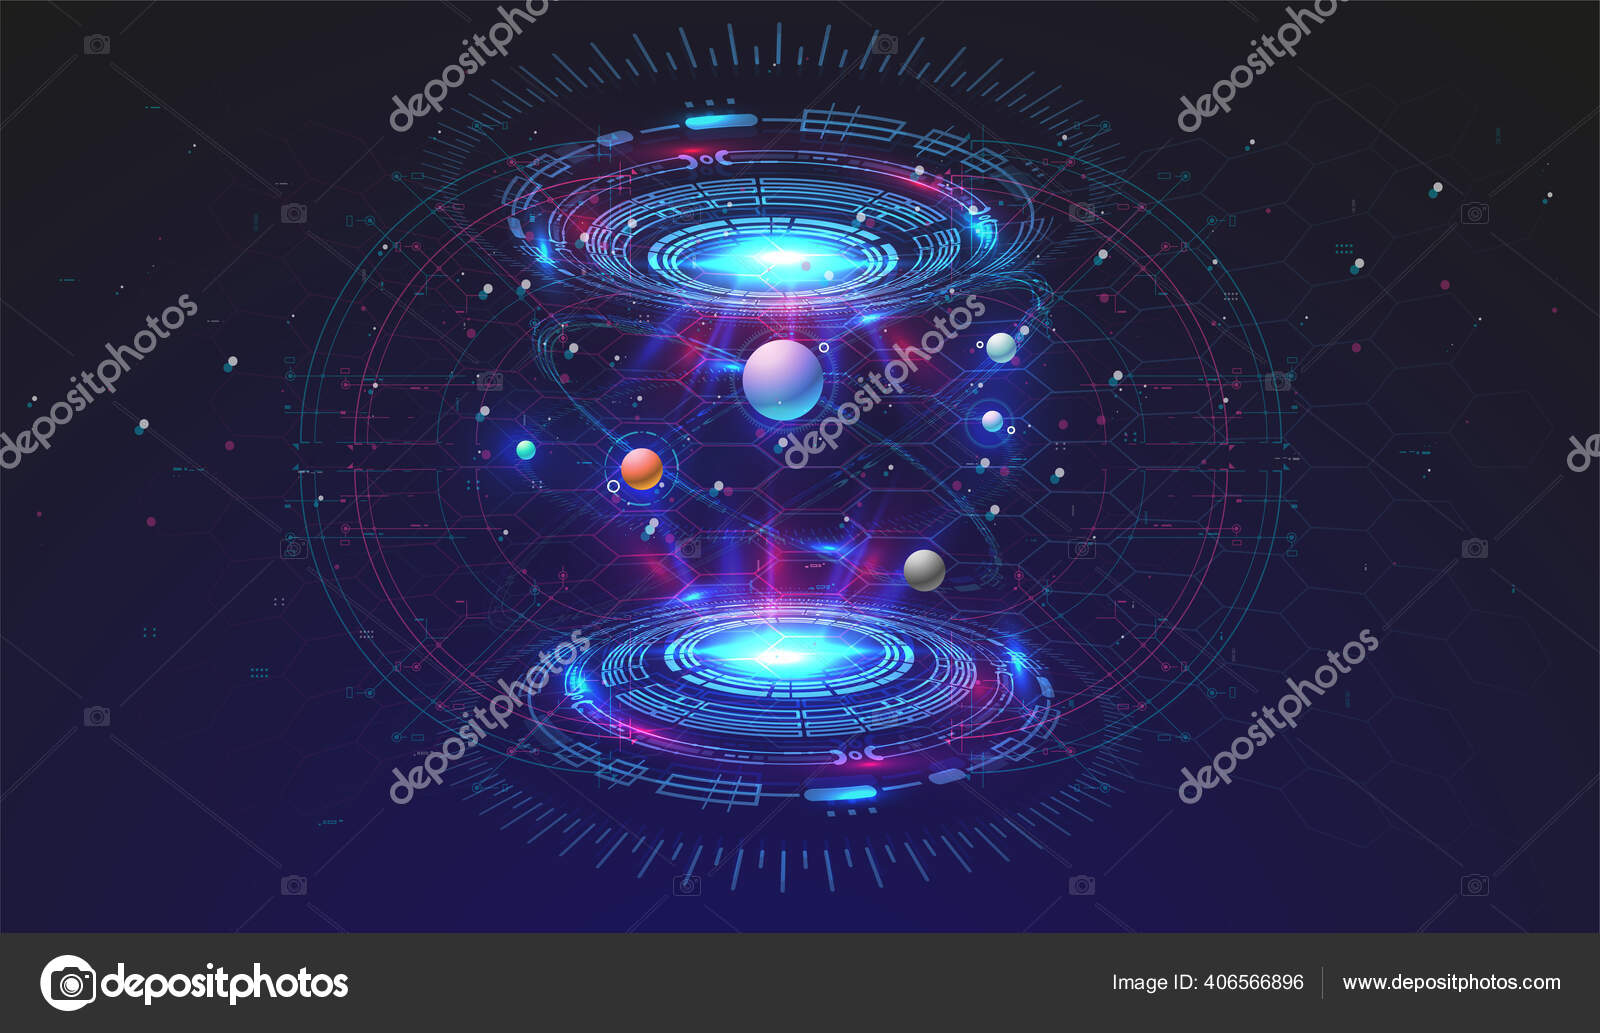 Modelo espacial Vector Art Stock Images | Depositphotos